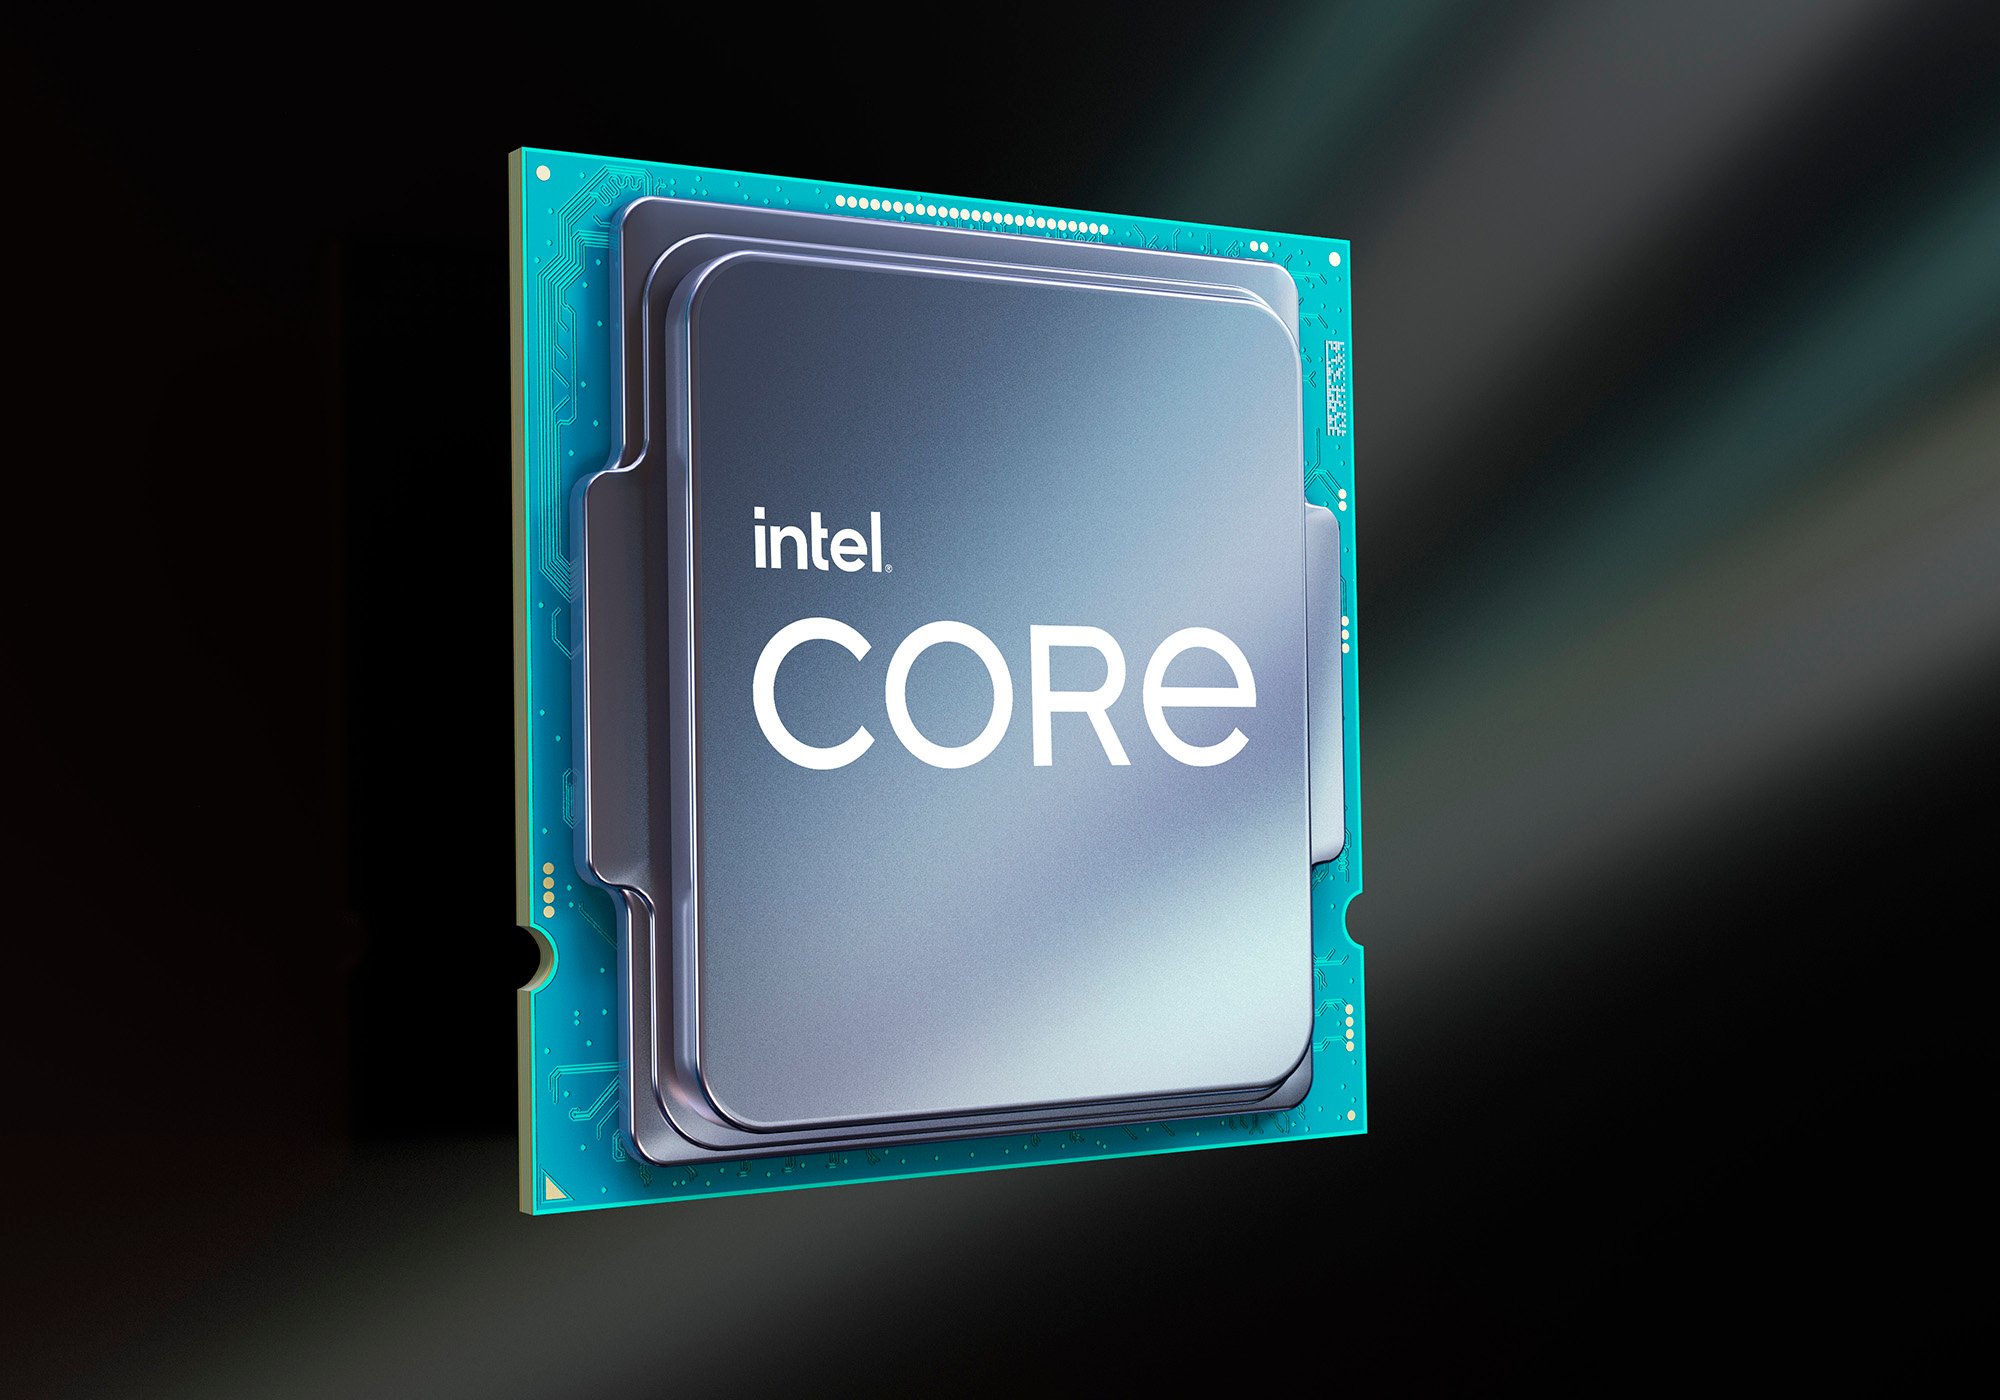 Ο Intel Core i7-11700K υστερεί σε απόδοση σε σχέση με τον AMD Ryzen 7 5800X